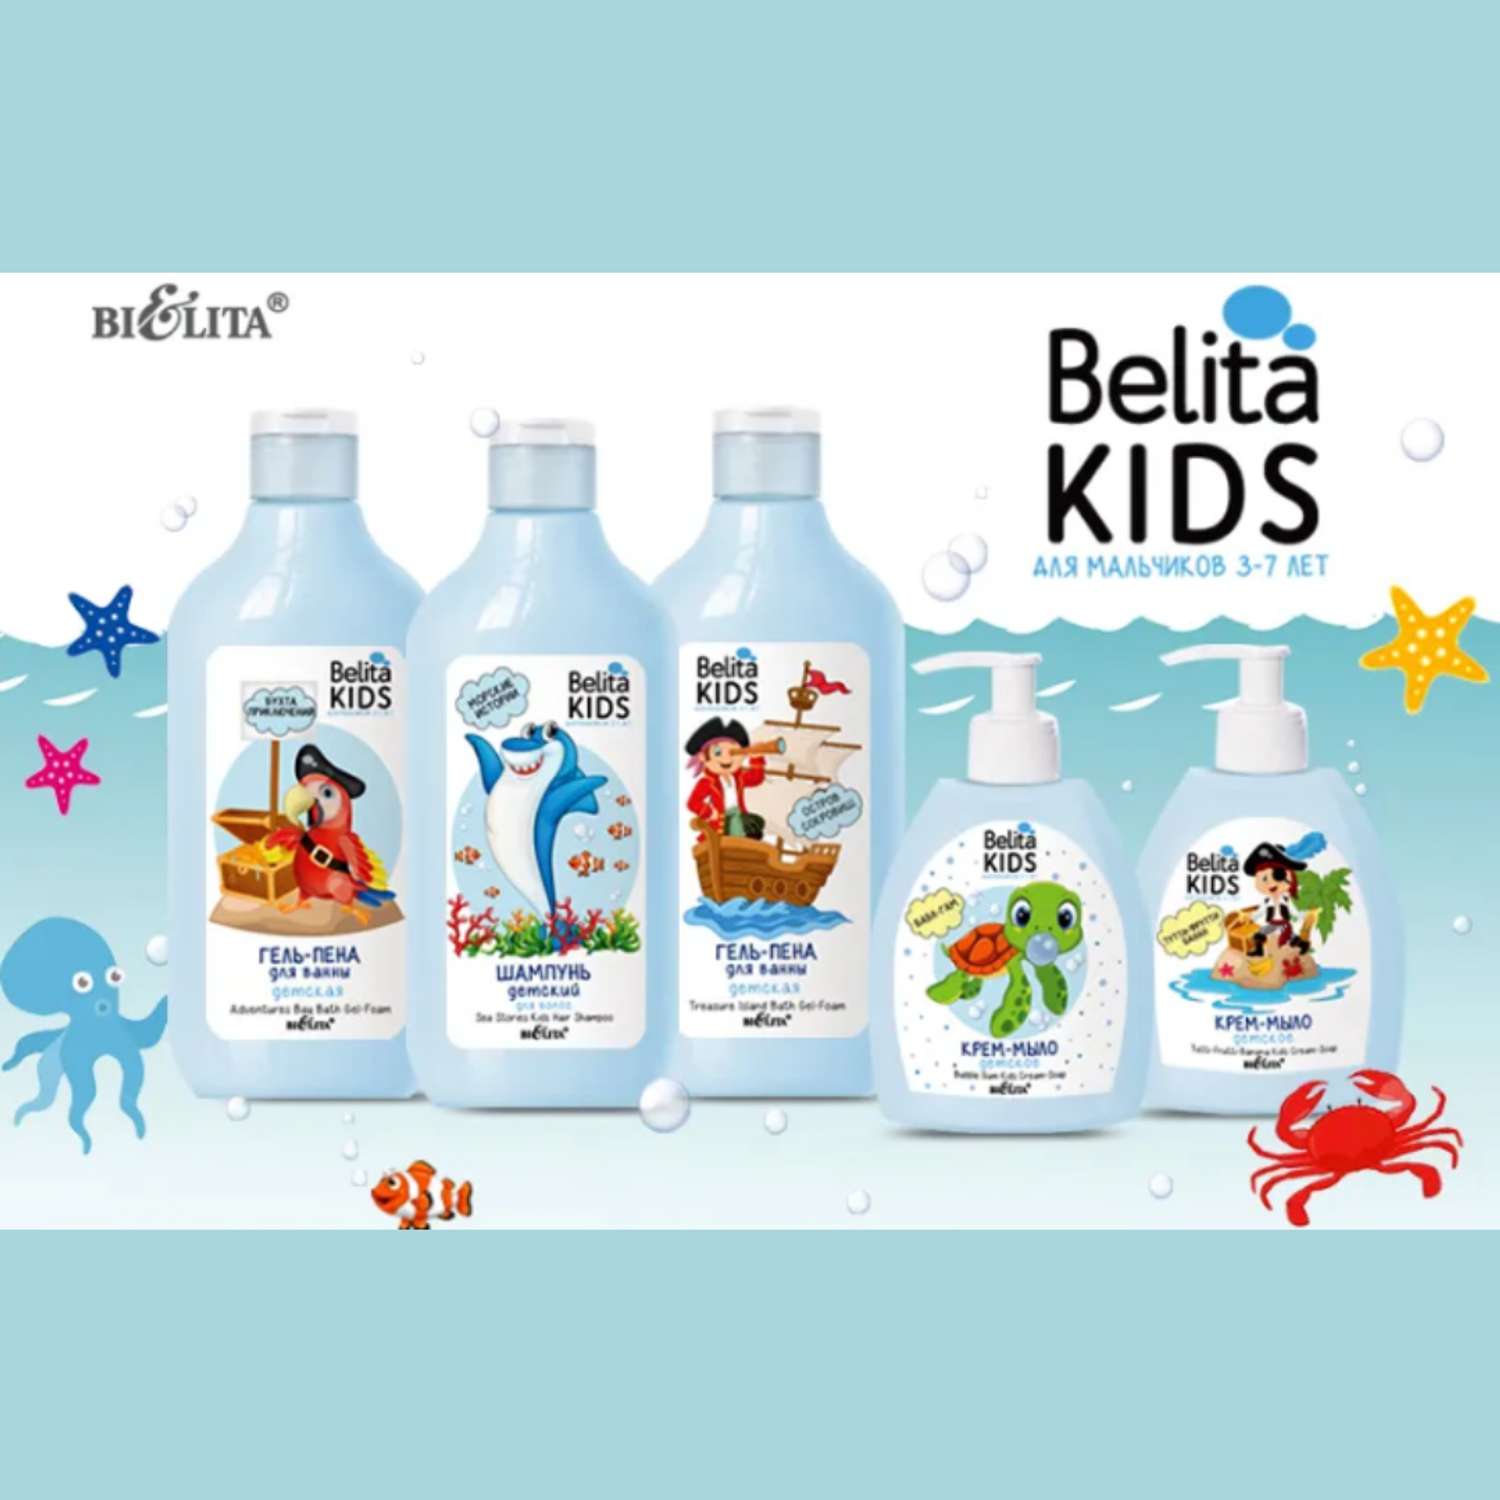 Гель-пена БЕЛИТА для ванны Belita Kids остров сокровищ для мальчиков 3-7 лет 300мл - фото 4